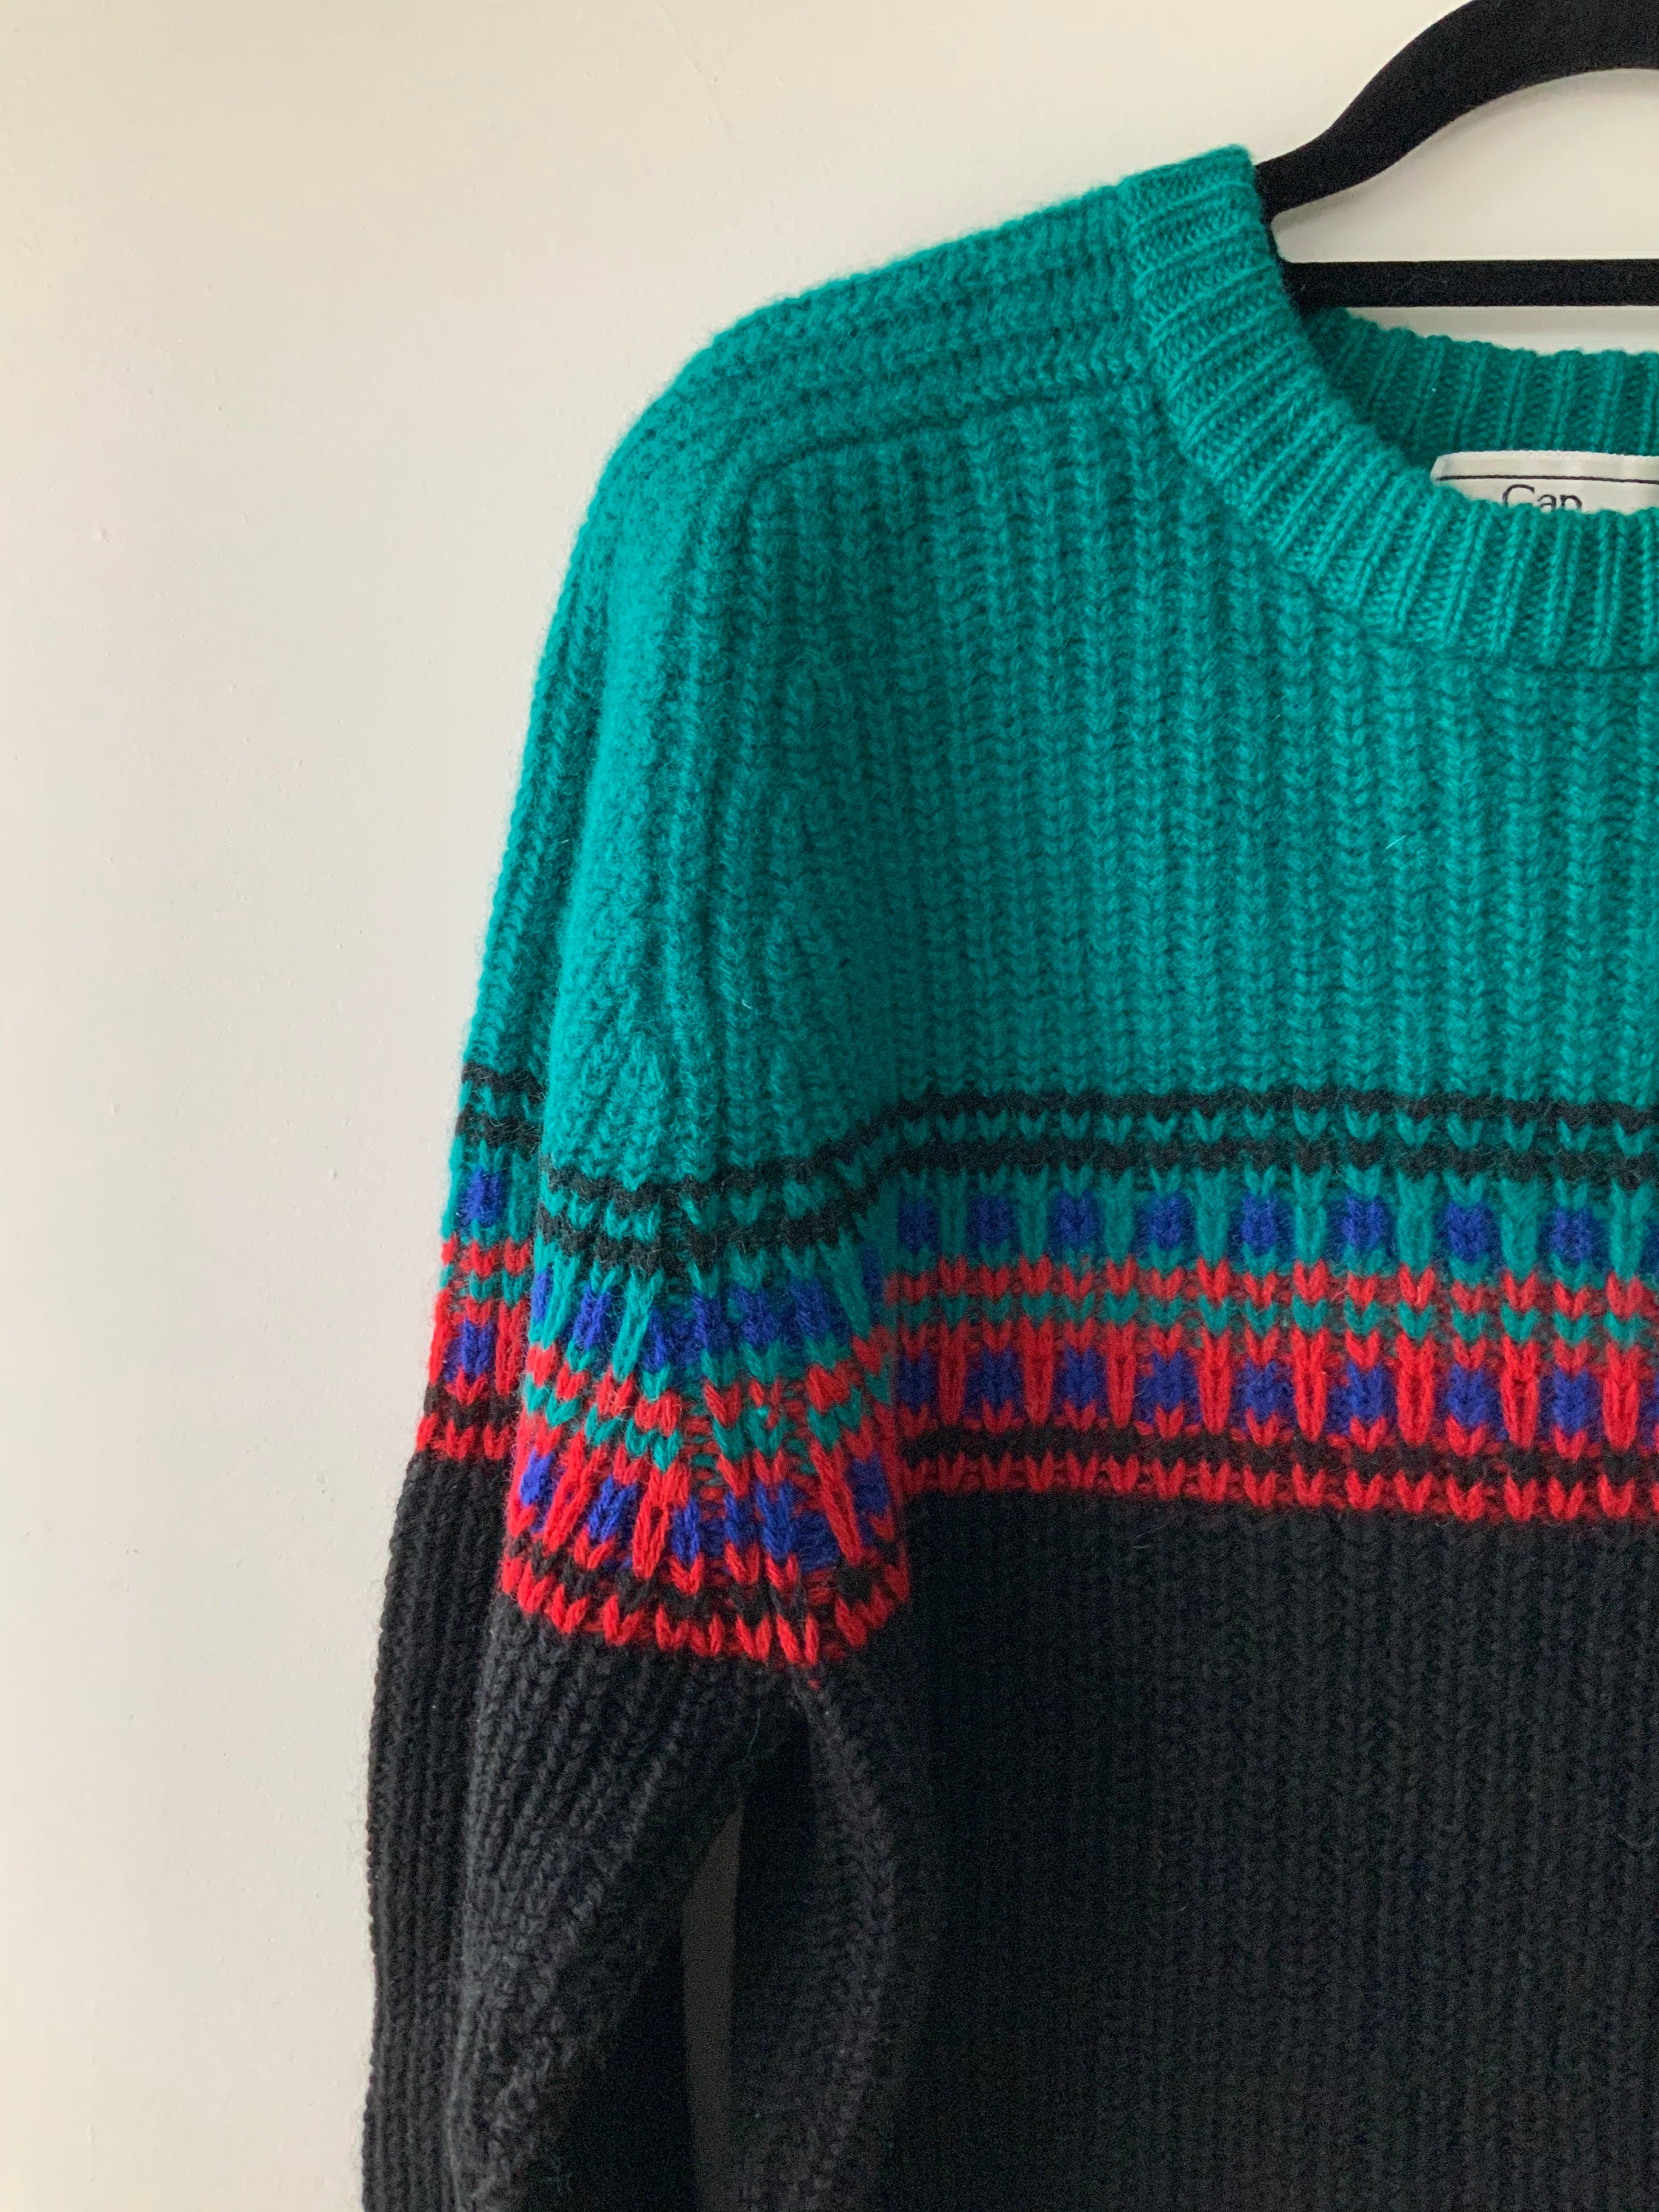 Vintage Gap wool sweater | Etsy